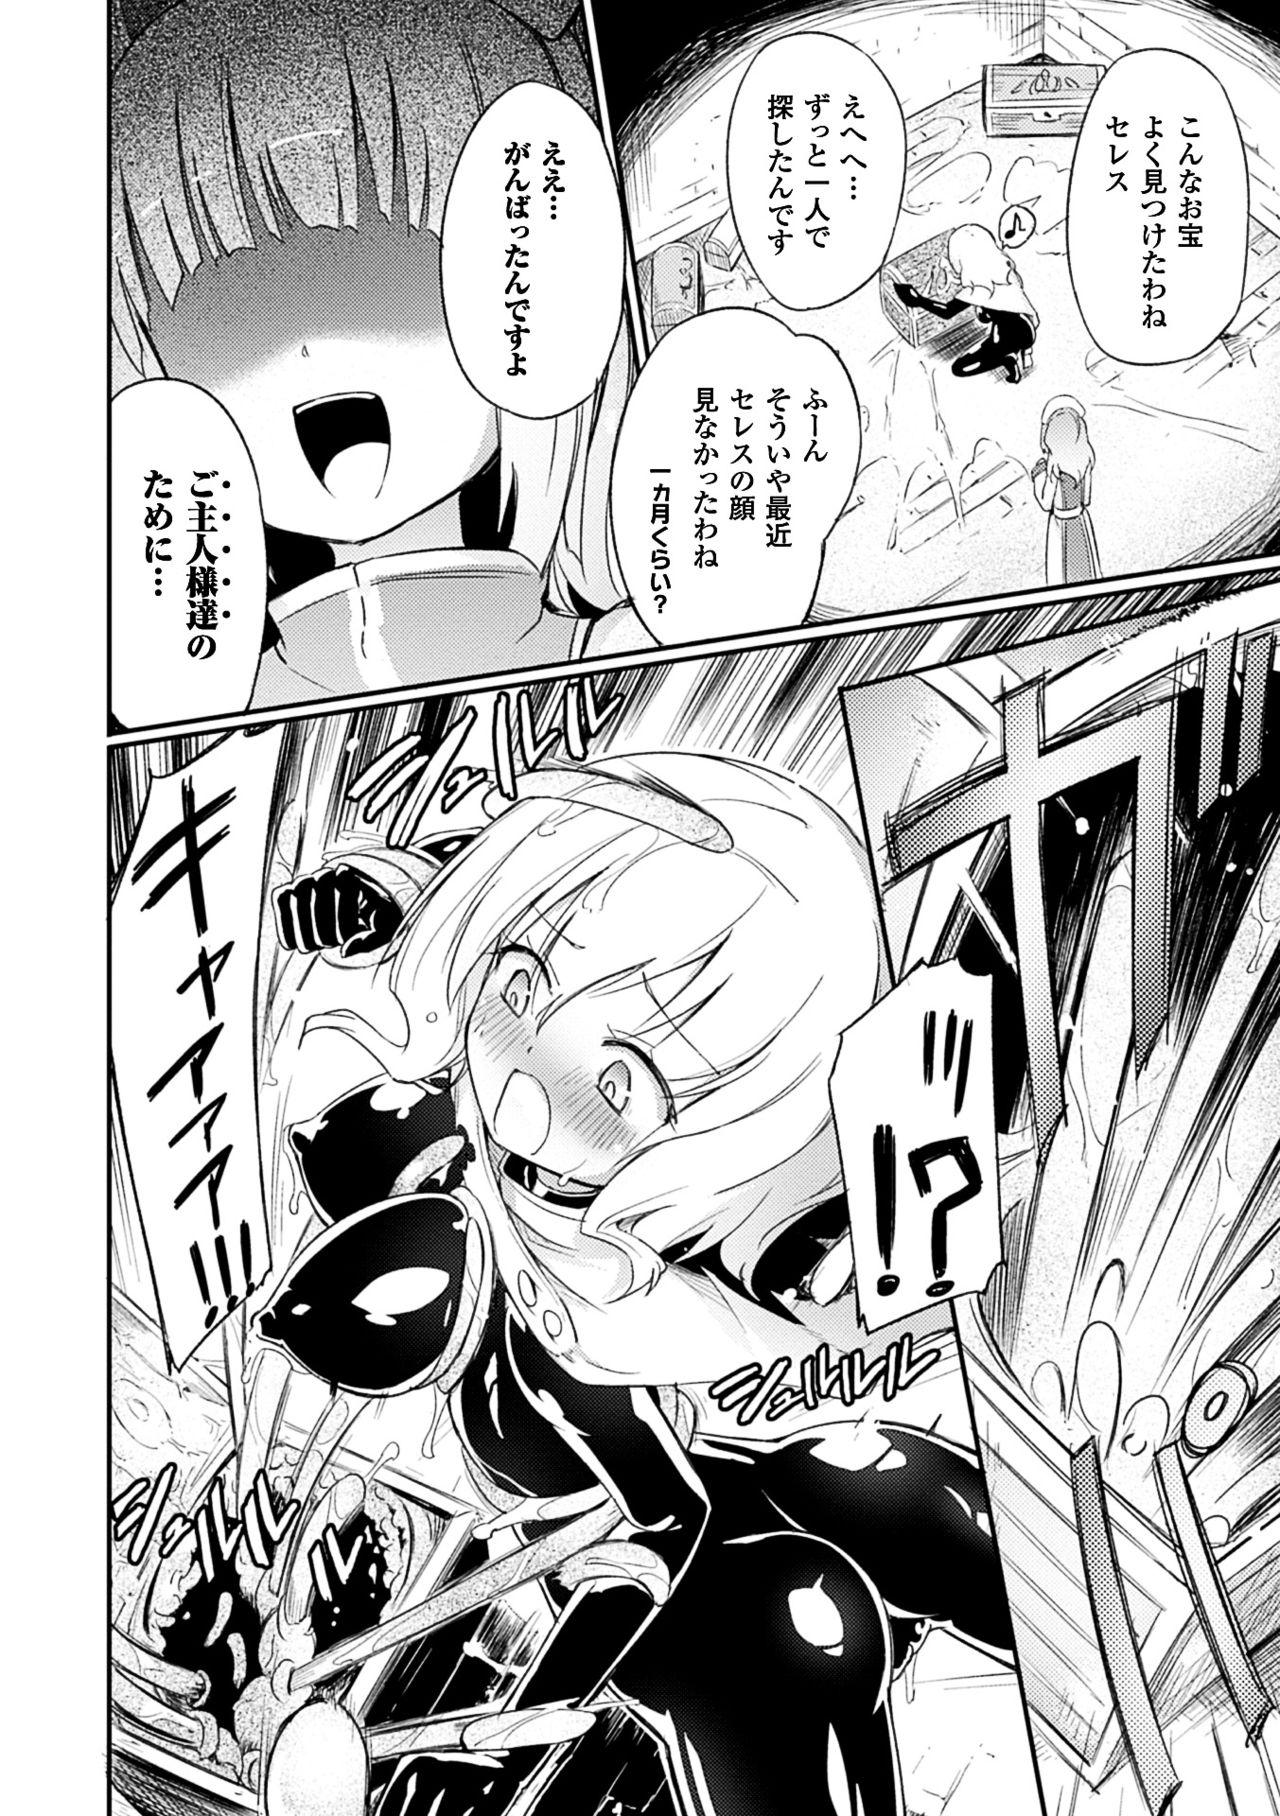 Socks 2D Comic Magazine Kairaku Meikyuu Dungeon ni Kodama suru Mesu no Kyousei Vol. 3 Francais - Page 5